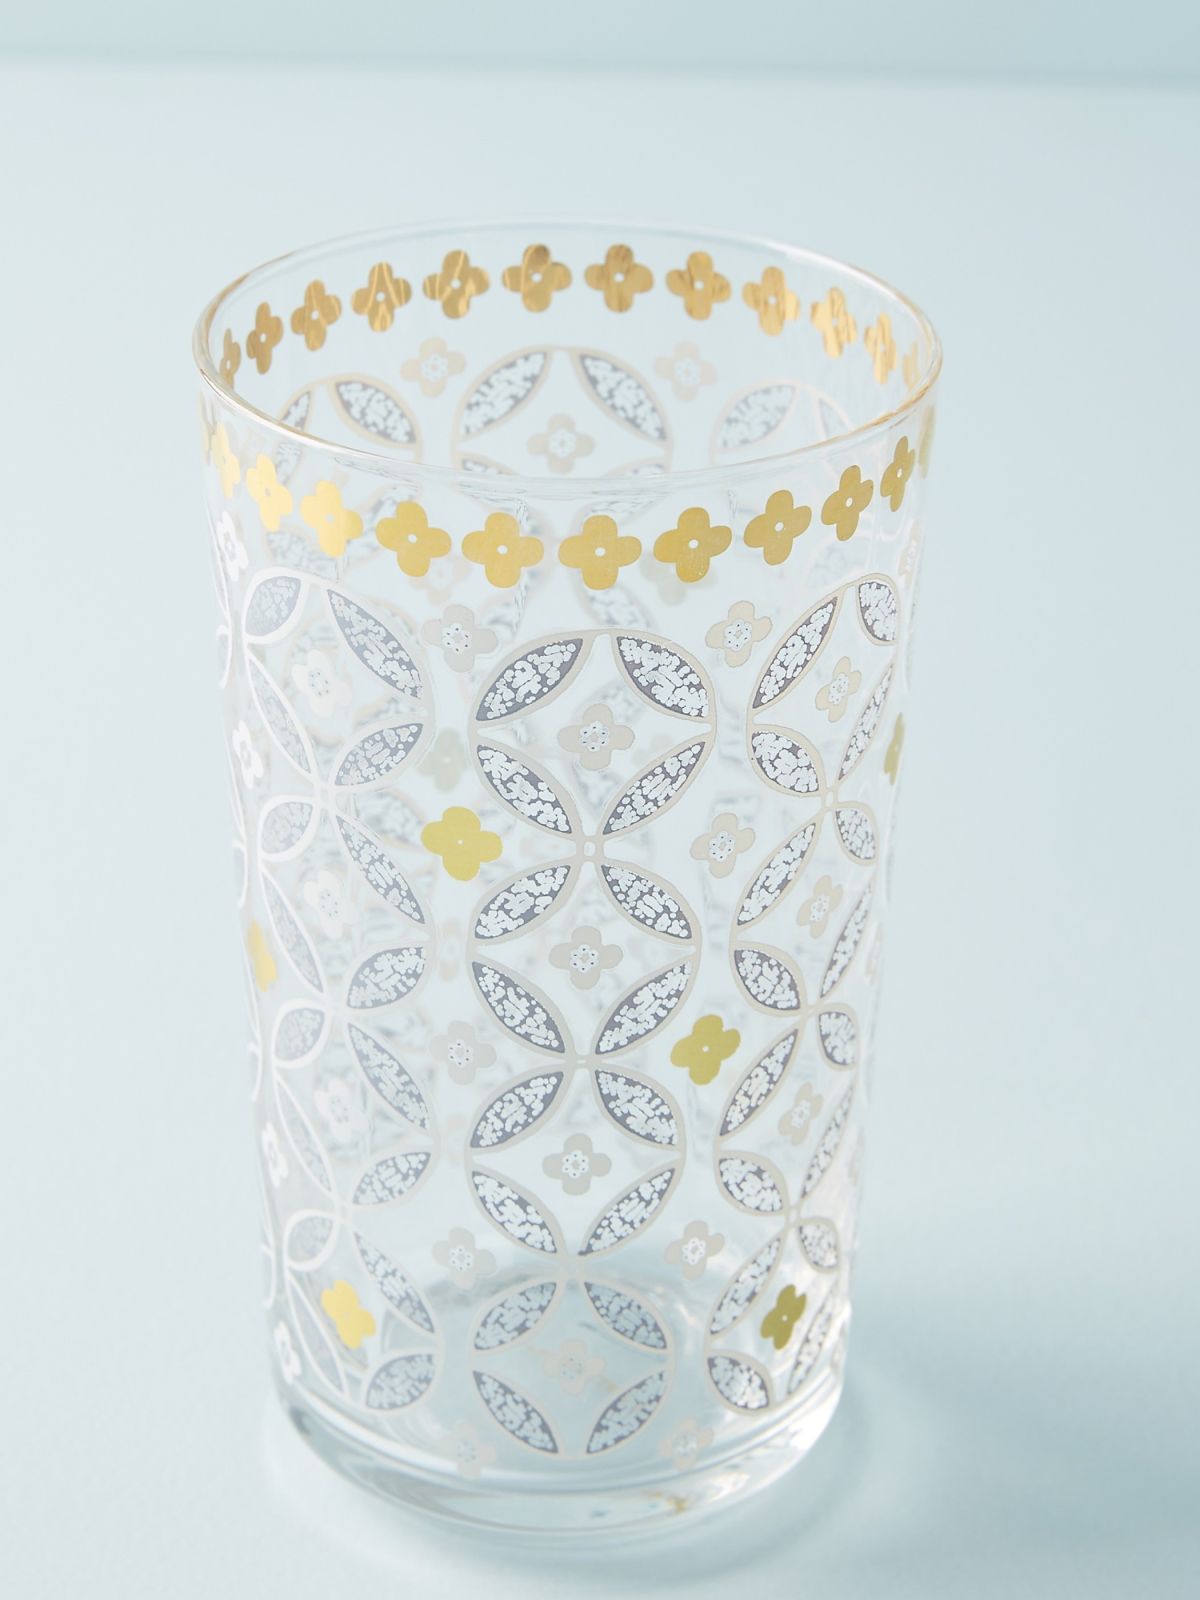  כוס זכוכית עם עיטורי פרחים וזהב של ANTHROPOLOGIE